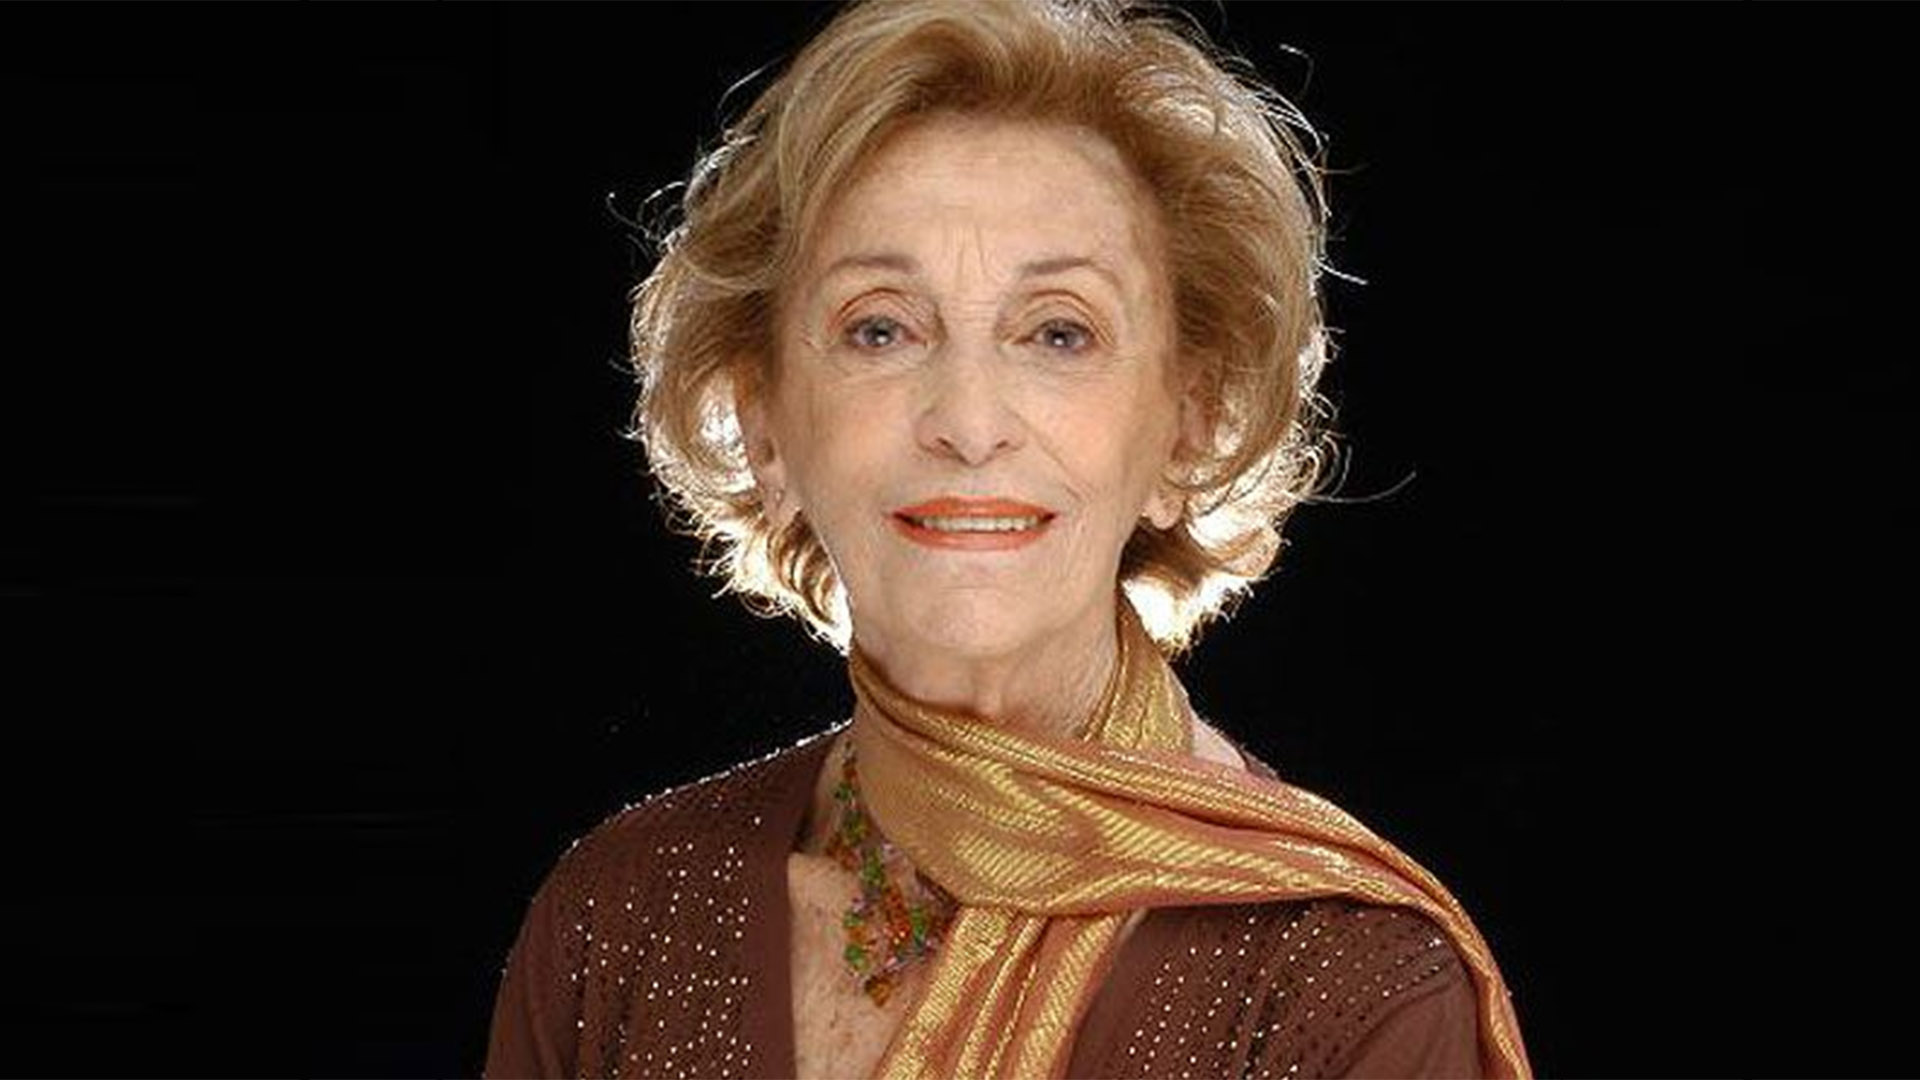 Hilda Bernard, 20 de abril de 2022, 101 años. La querida artista tuvo una extensa trayectoria de más de seis décadas en radio, radioteatro, teatro, cine y televisión. Fue la actriz más longeva en la historia del espectáculo argentino